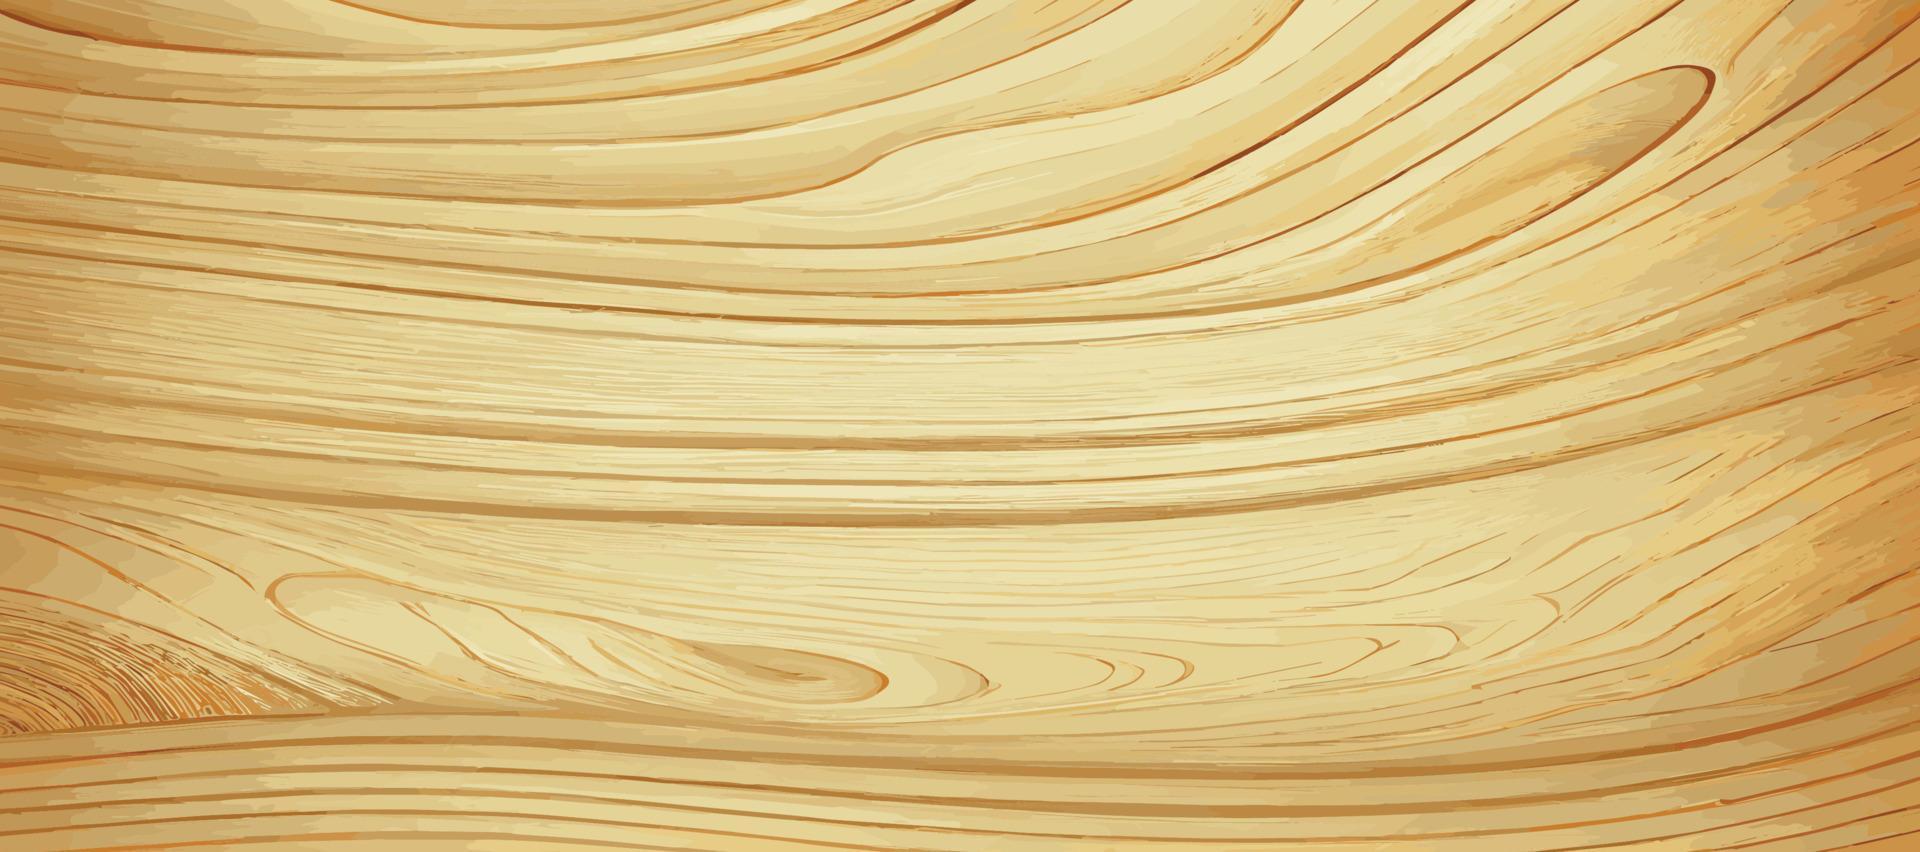 Panorama-Textur von hellem Holz mit Knoten - Vektor